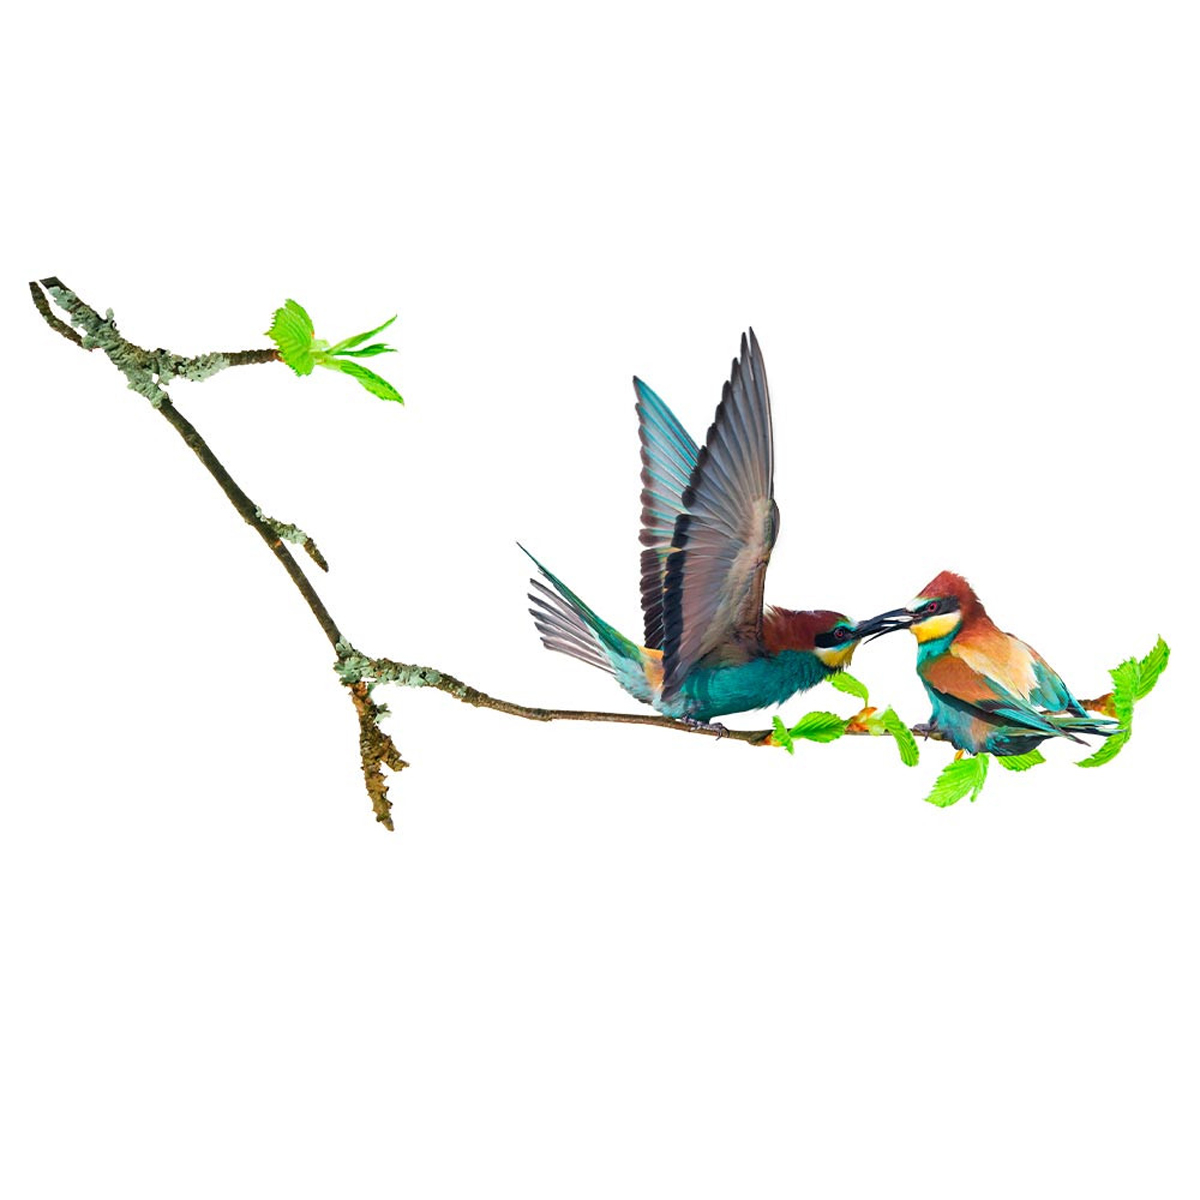 Planche de stickers \'Oiseaux sur branche\' multicolore - 20x70 cm - [R6013]